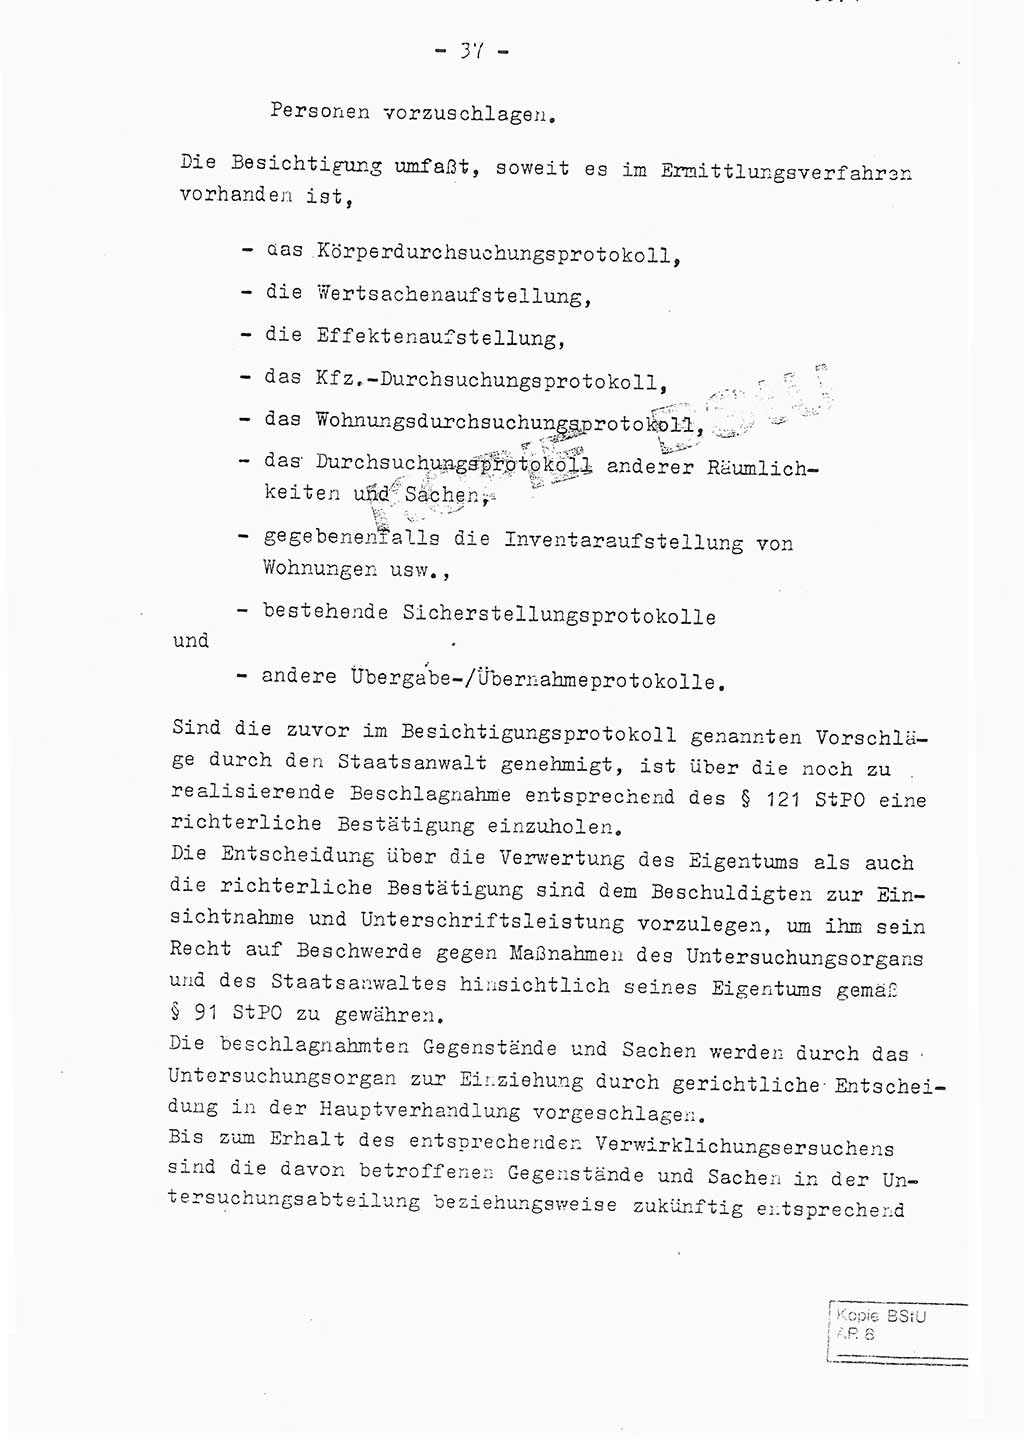 Fachschulabschlußarbeit Leutnant Volkmar Taubert (HA Ⅸ/9), Leutnant Axel Naumann (HA Ⅸ/9), Unterleutnat Detlef Debski (HA Ⅸ/9), Ministerium für Staatssicherheit (MfS) [Deutsche Demokratische Republik (DDR)], Juristische Hochschule (JHS), Vertrauliche Verschlußsache (VVS) 001-699/76, Potsdam 1976, Seite 37 (FS-Abschl.-Arb. MfS DDR JHS VVS 001-699/76 1976, S. 37)